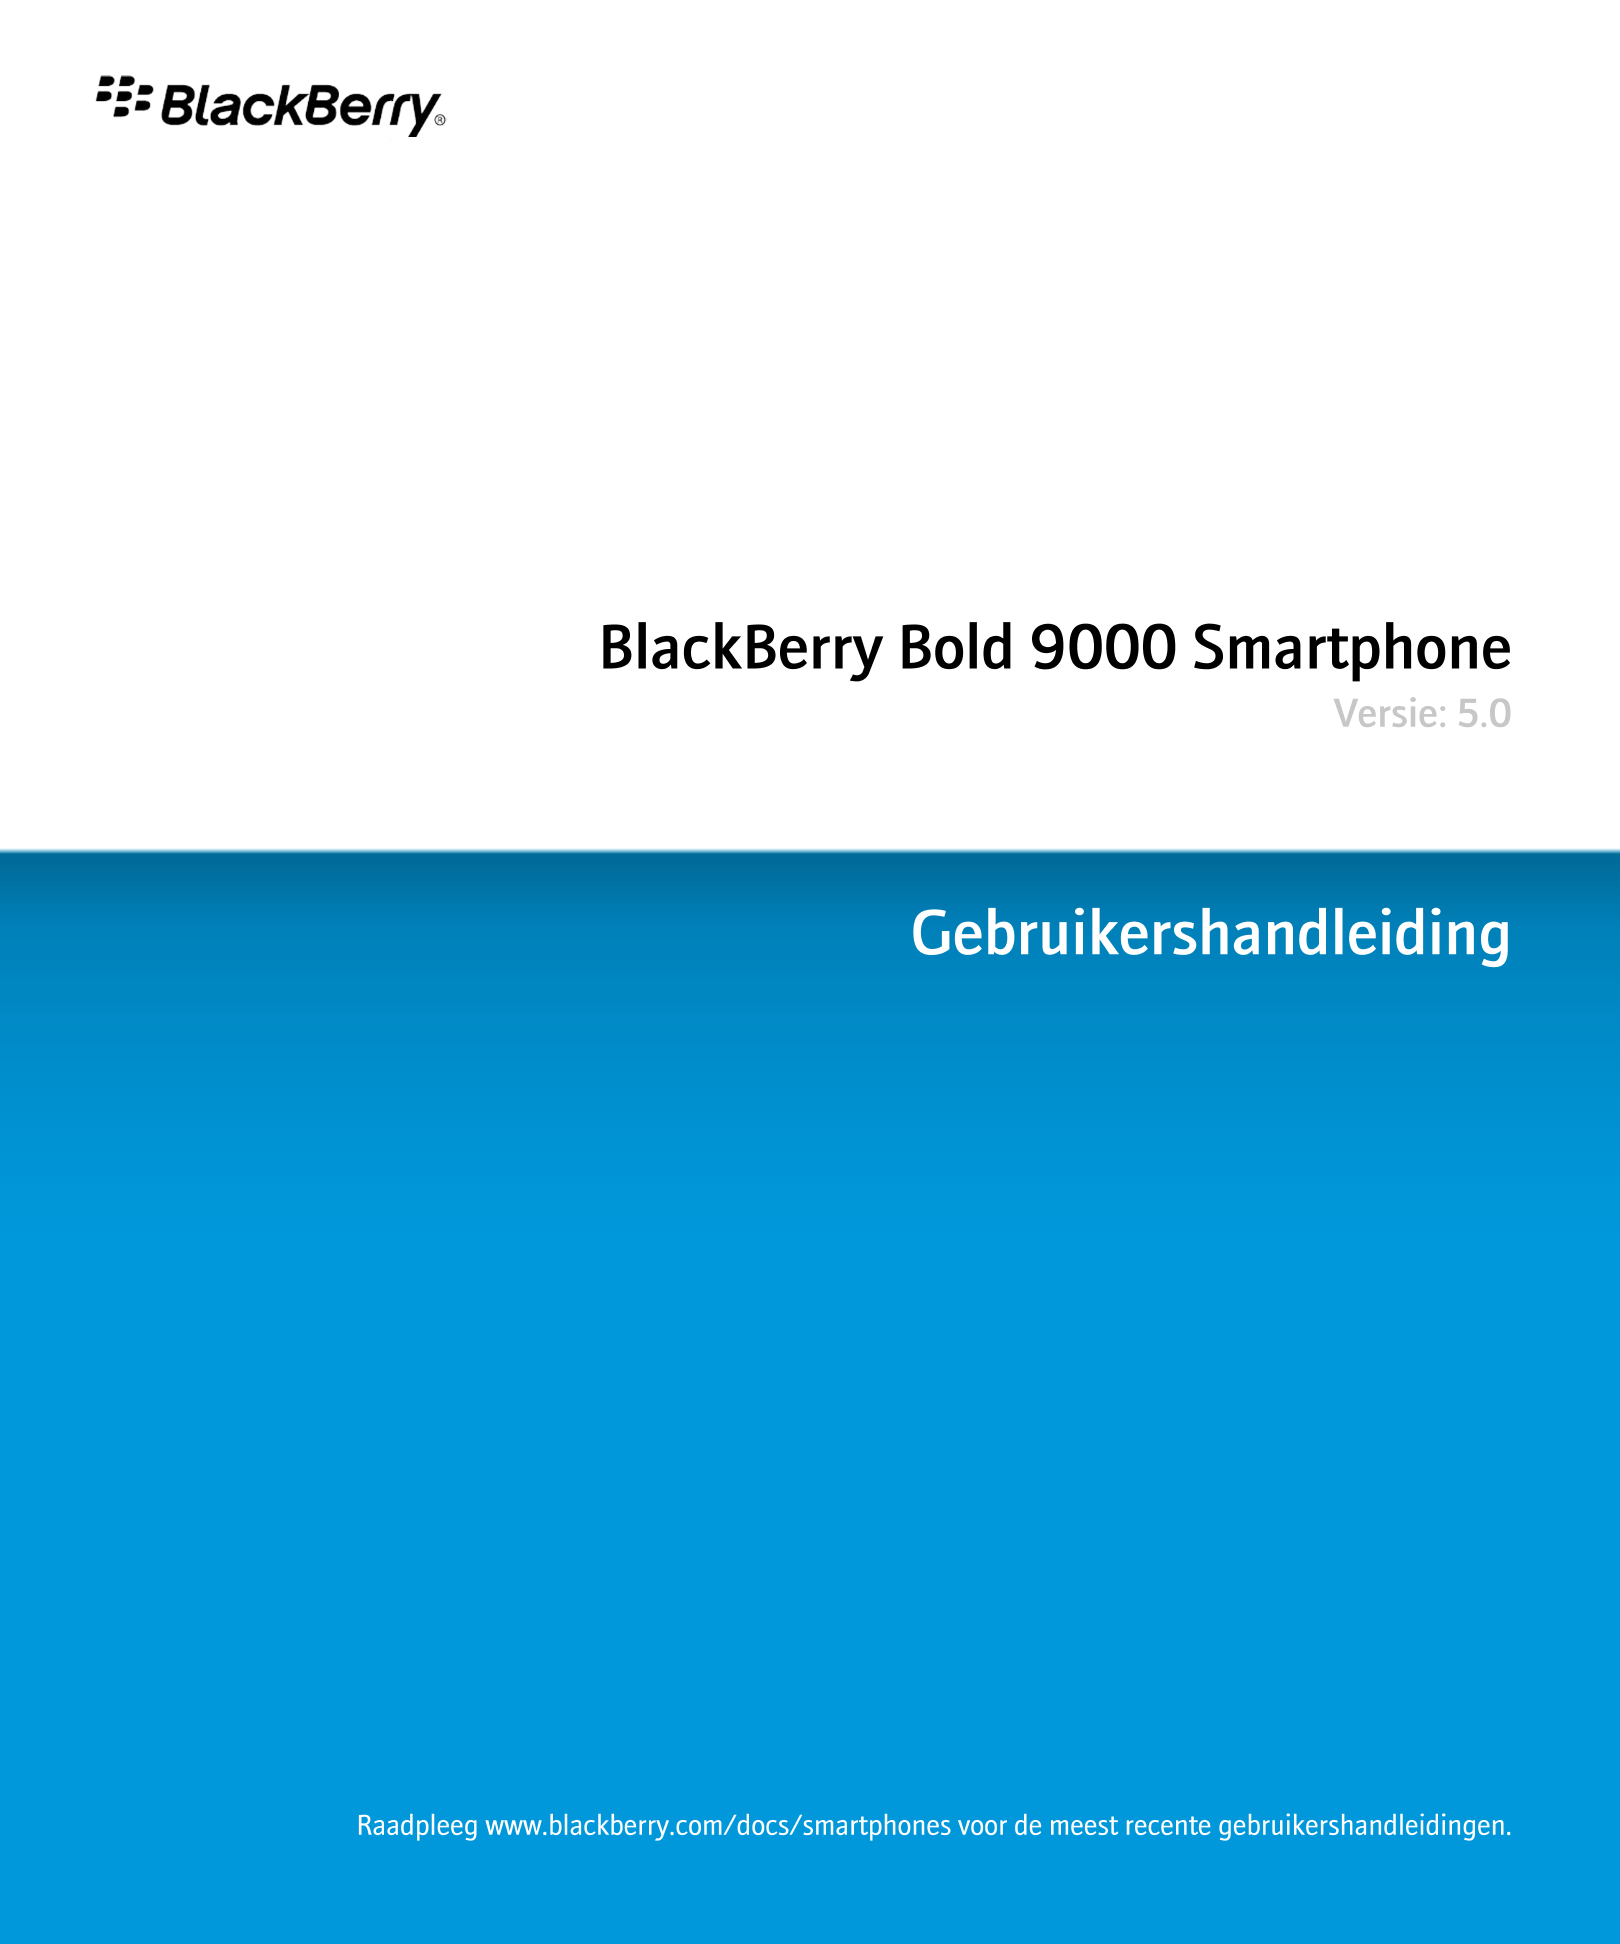 BlackBerry Bold 9000 Smartphone
Versie: 5.0
Gebruikershandleiding
Raadpleeg www.blackberry.com/docs/smartphones voor de meest re